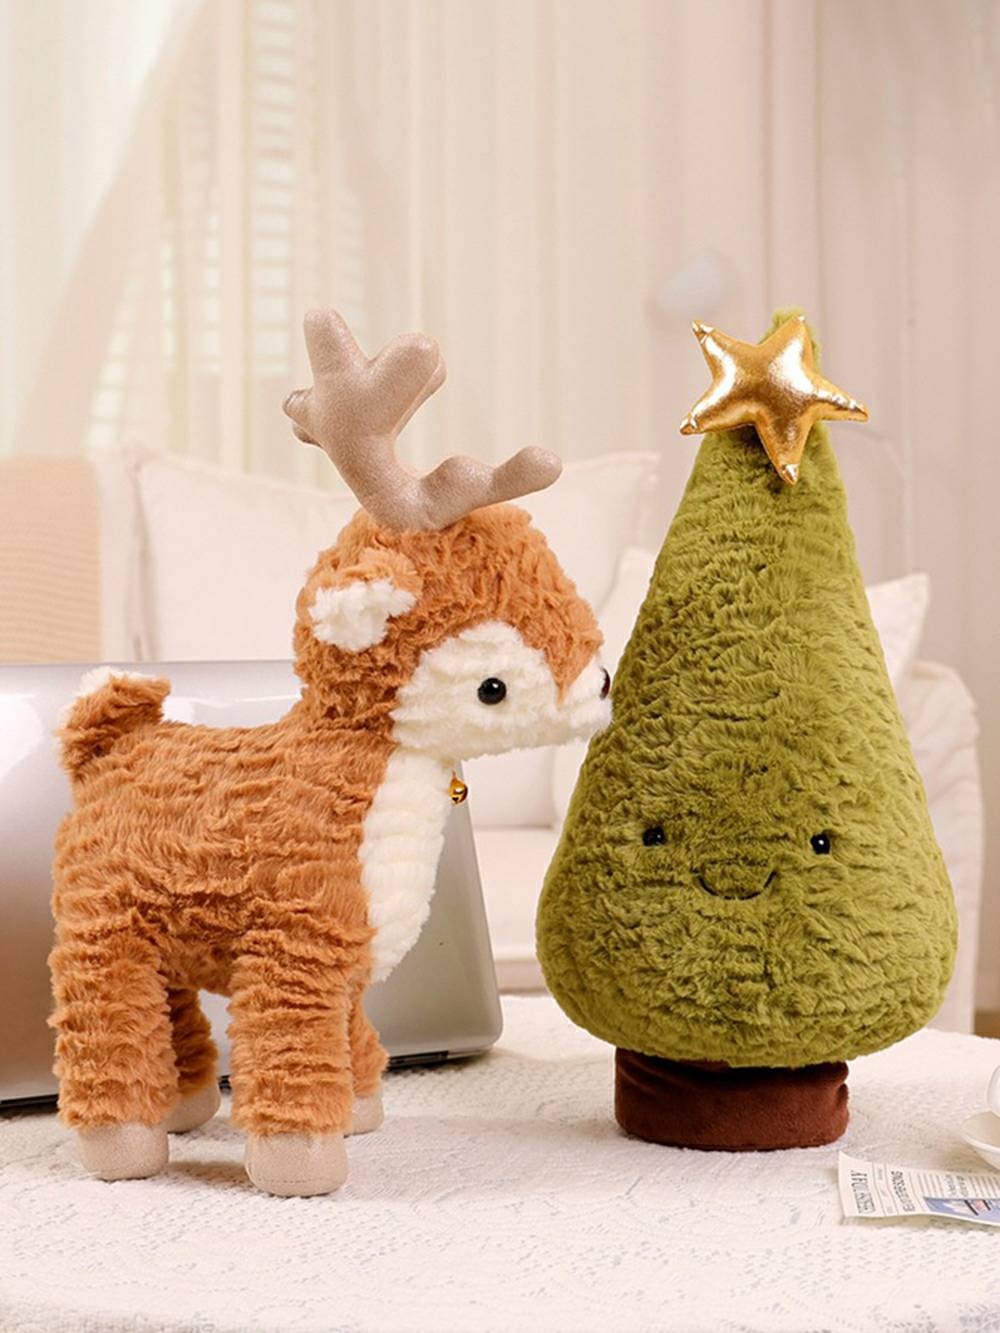 Cartoon Christmas Plysj Doll Bell Reindeer Toy